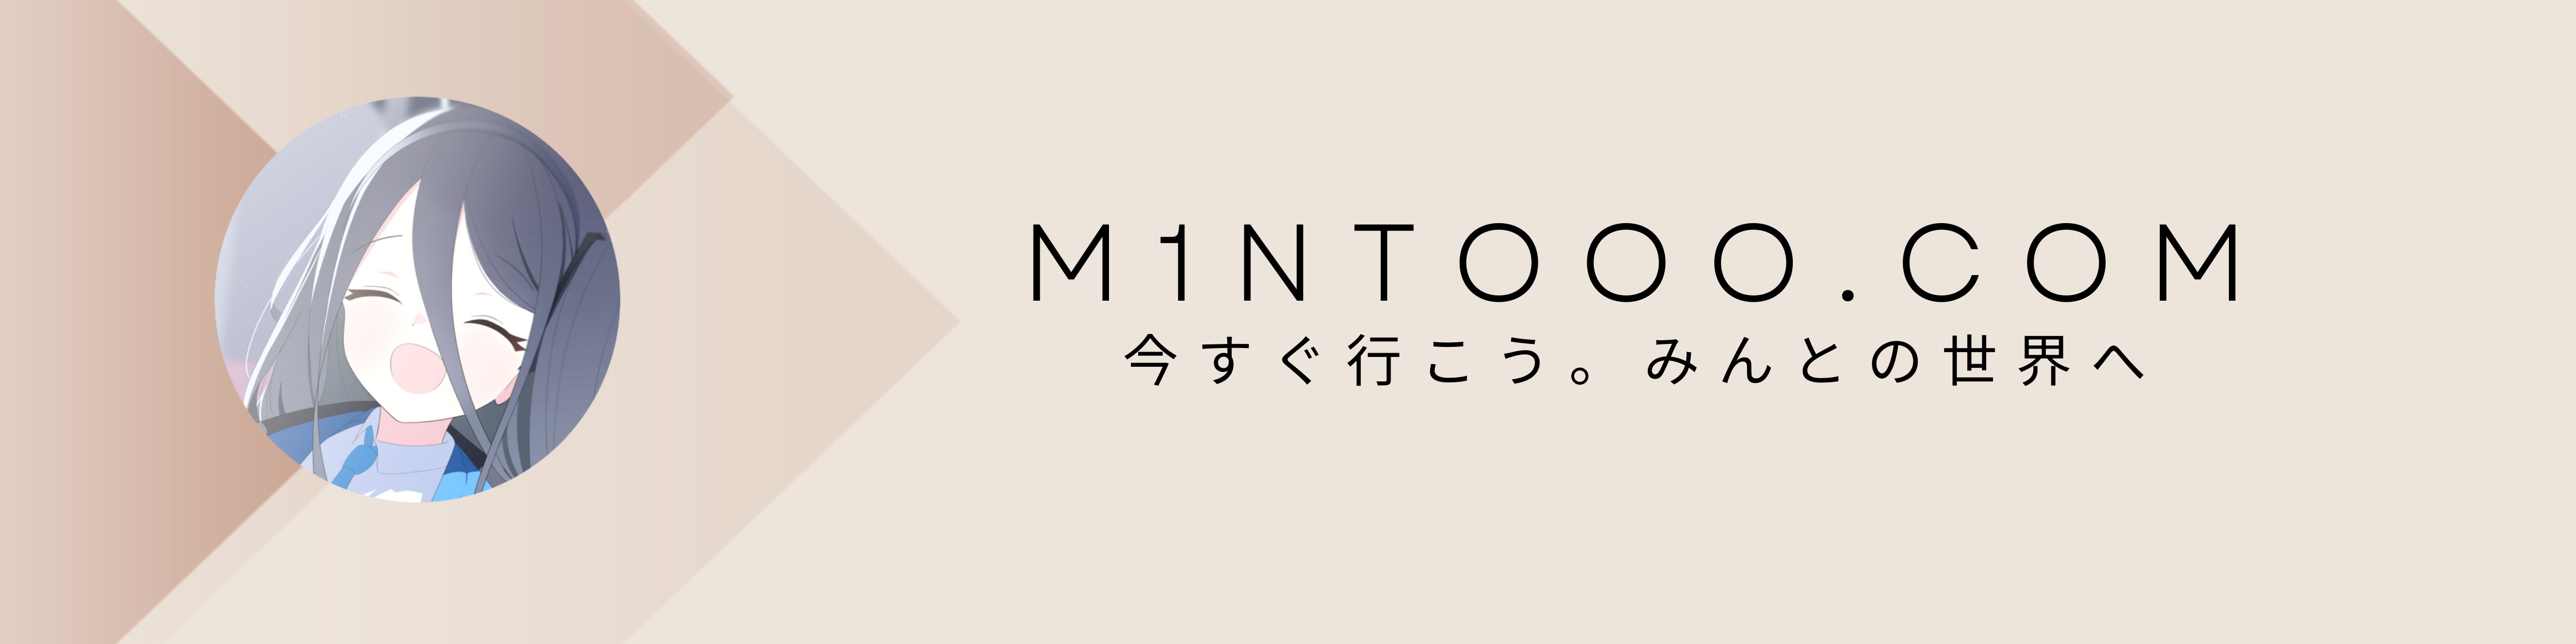 mintooo.com